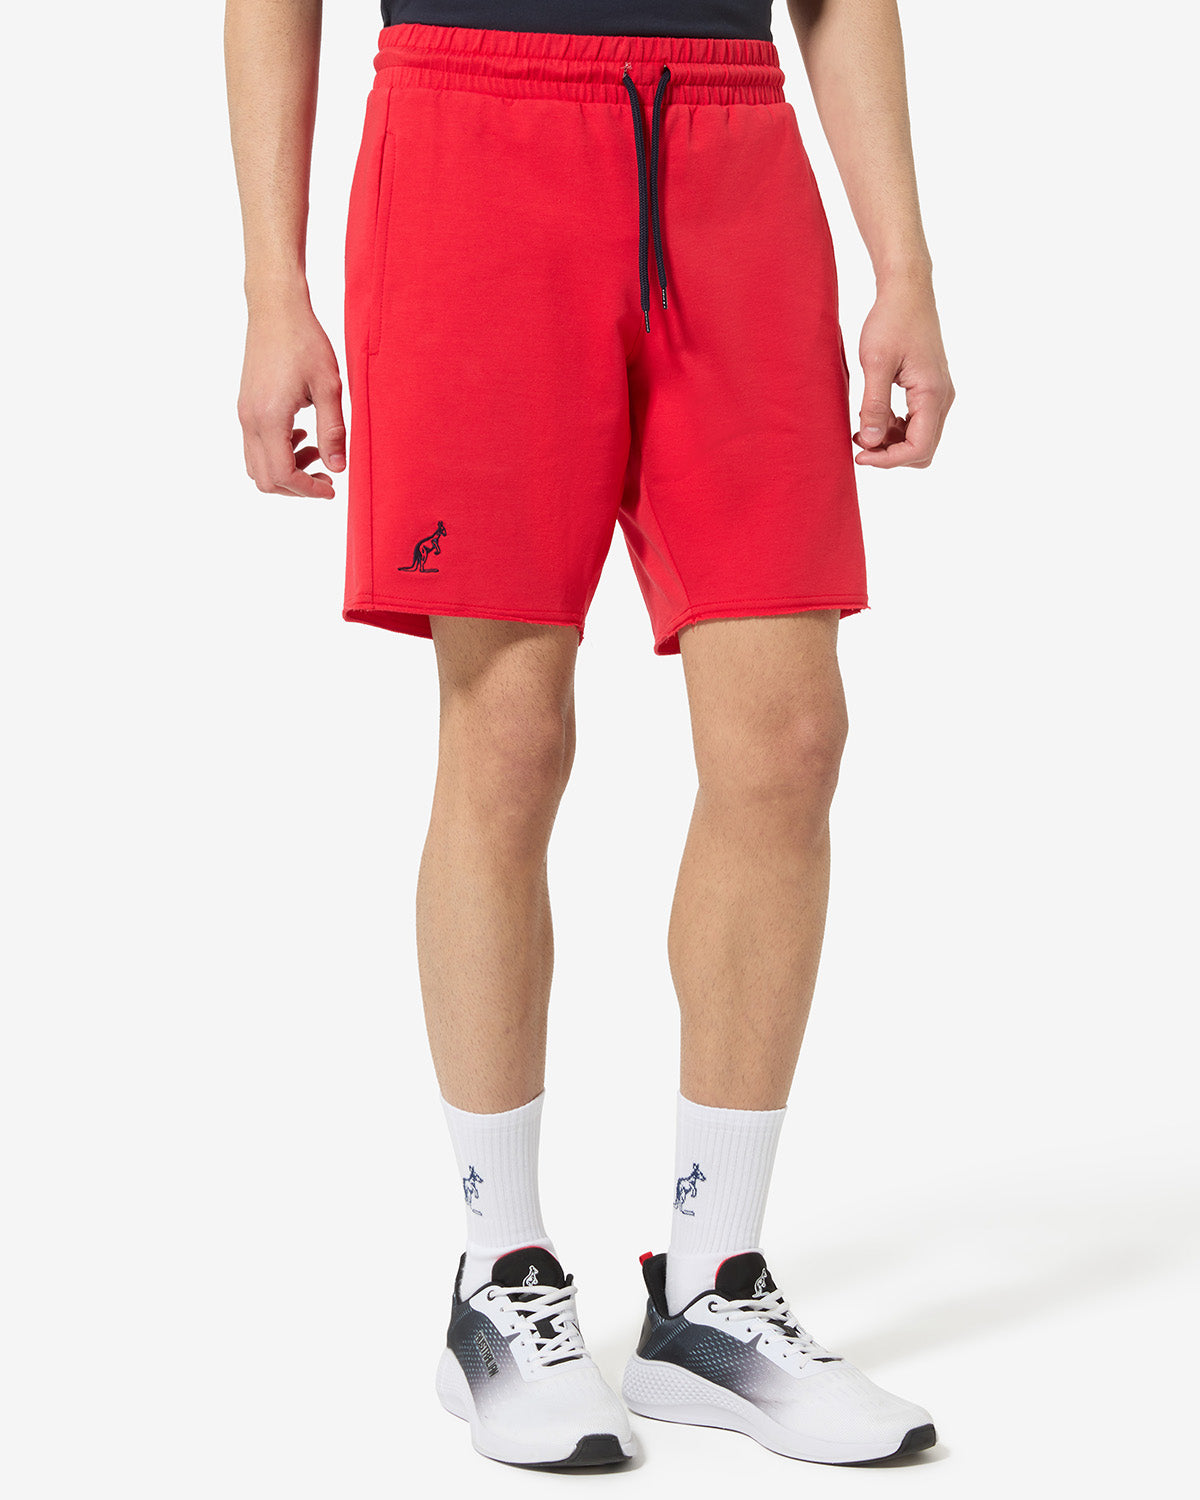 Essential Shorts: Australian Sportswear